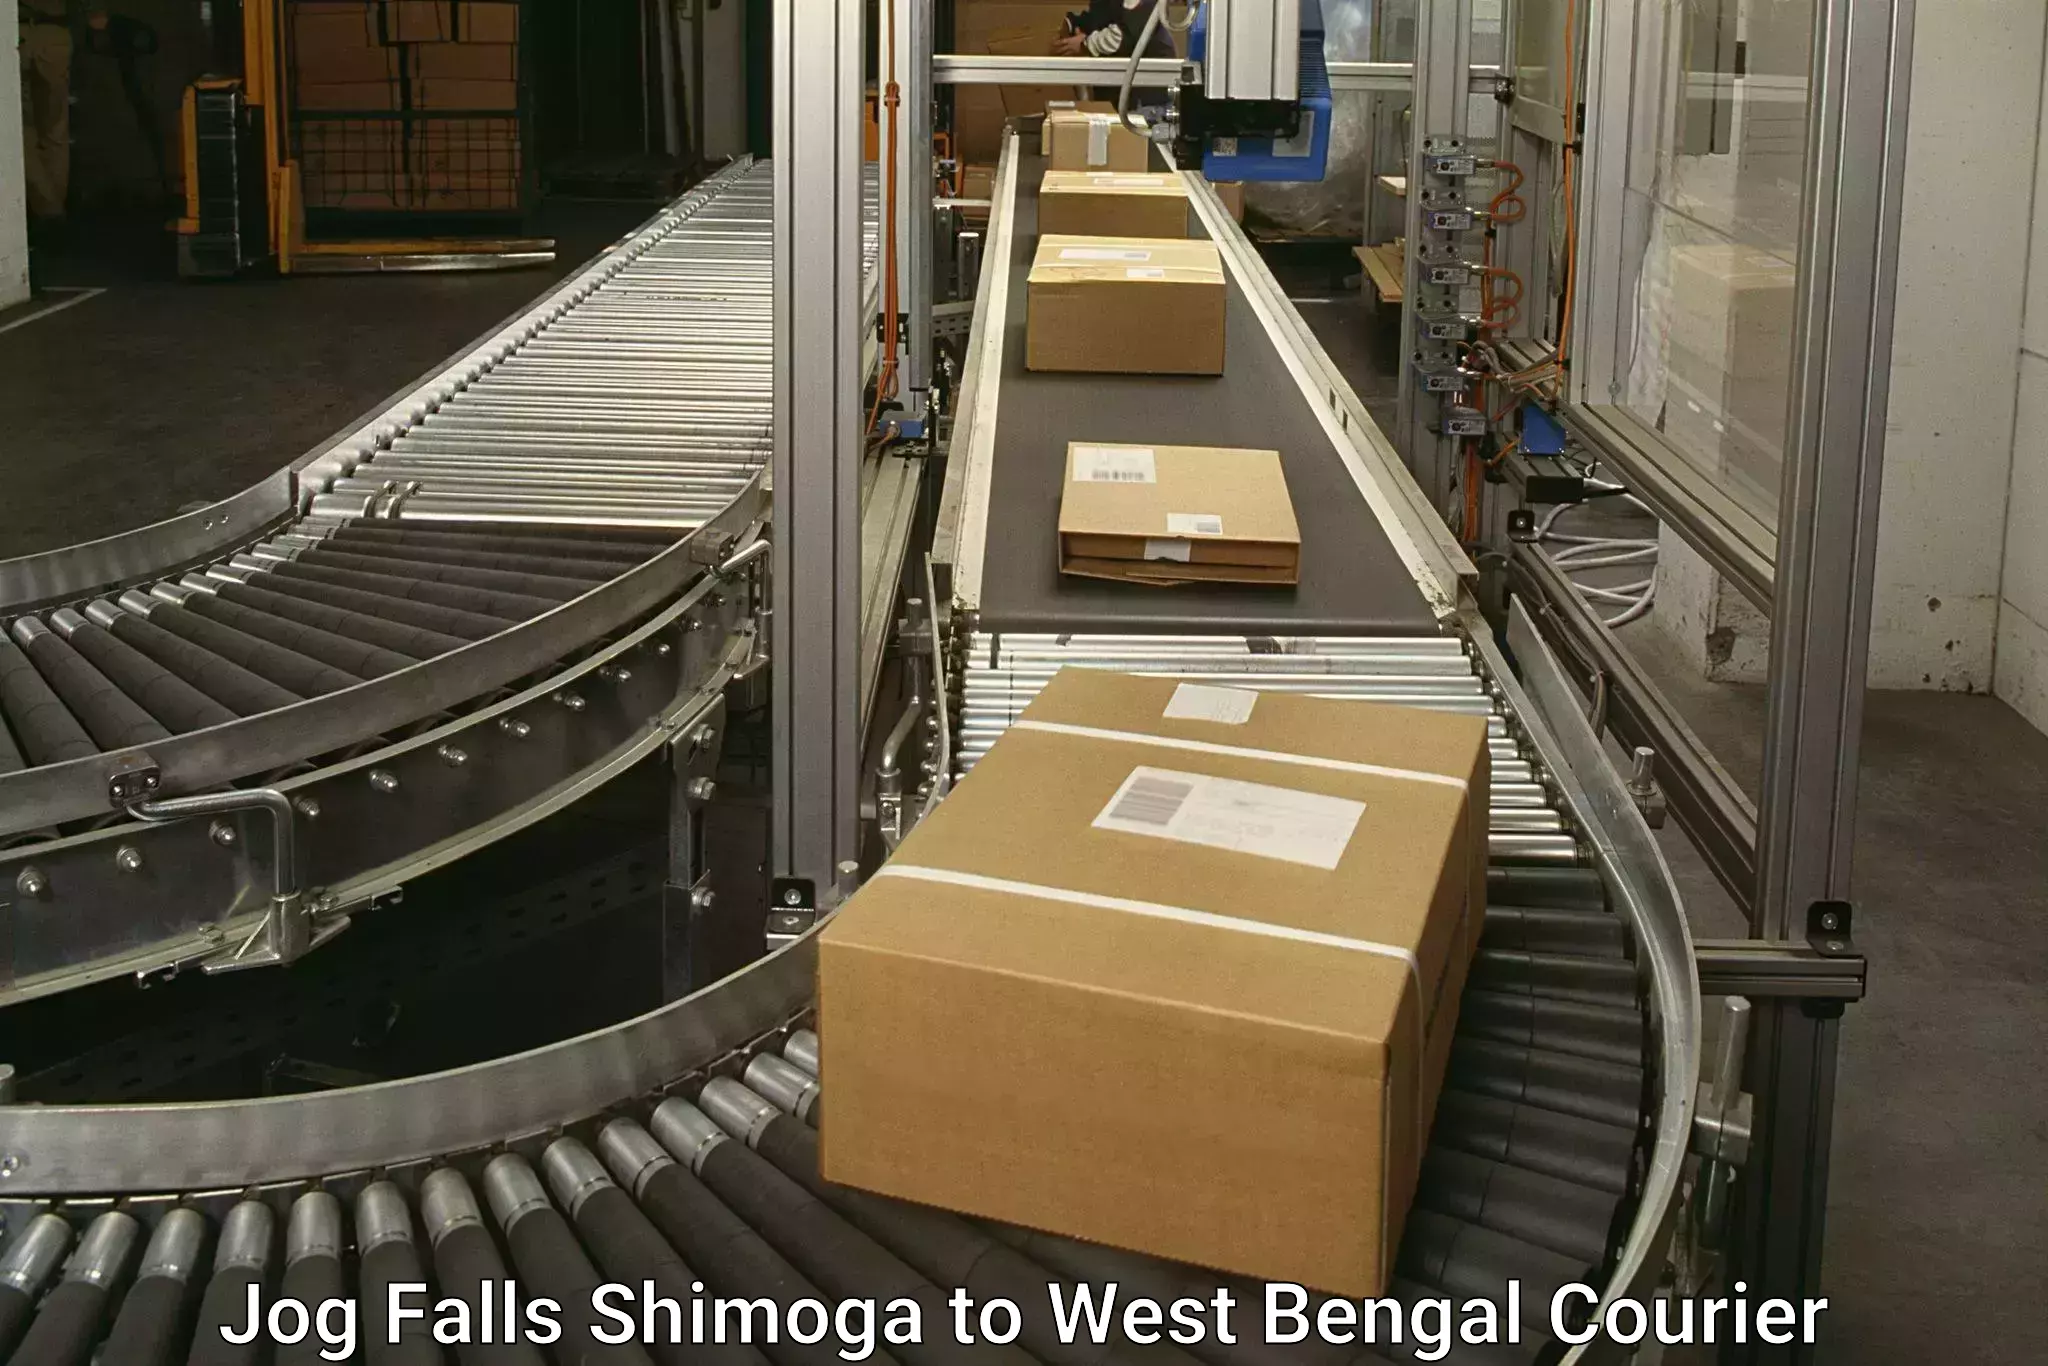 Doorstep delivery service Jog Falls Shimoga to Darjeeling